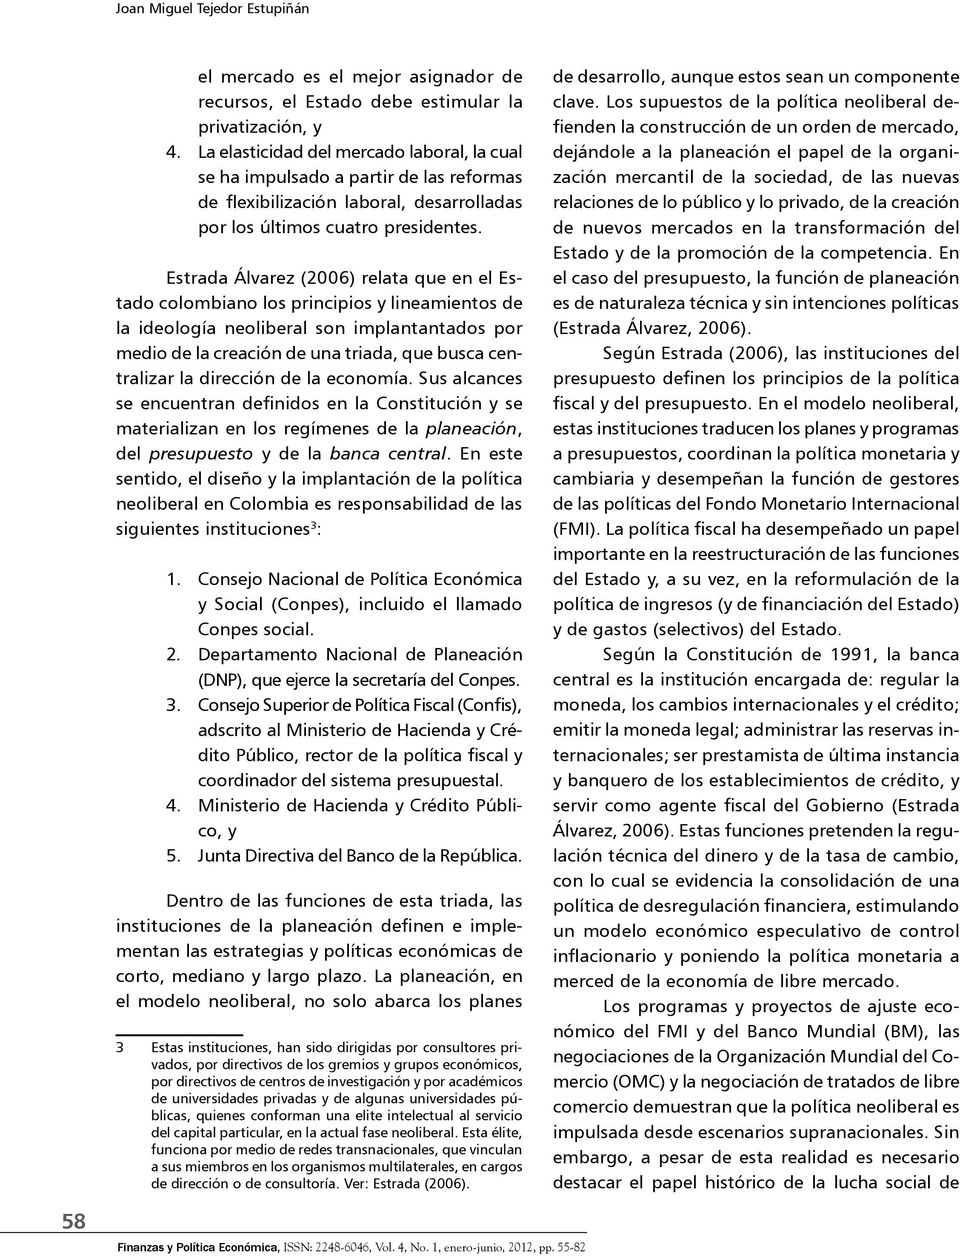 Estrada Álvarez (2006) relata que en el Estado colombiano los principios y lineamientos de la ideología neoliberal son implantantados por medio de la creación de una triada, que busca centralizar la